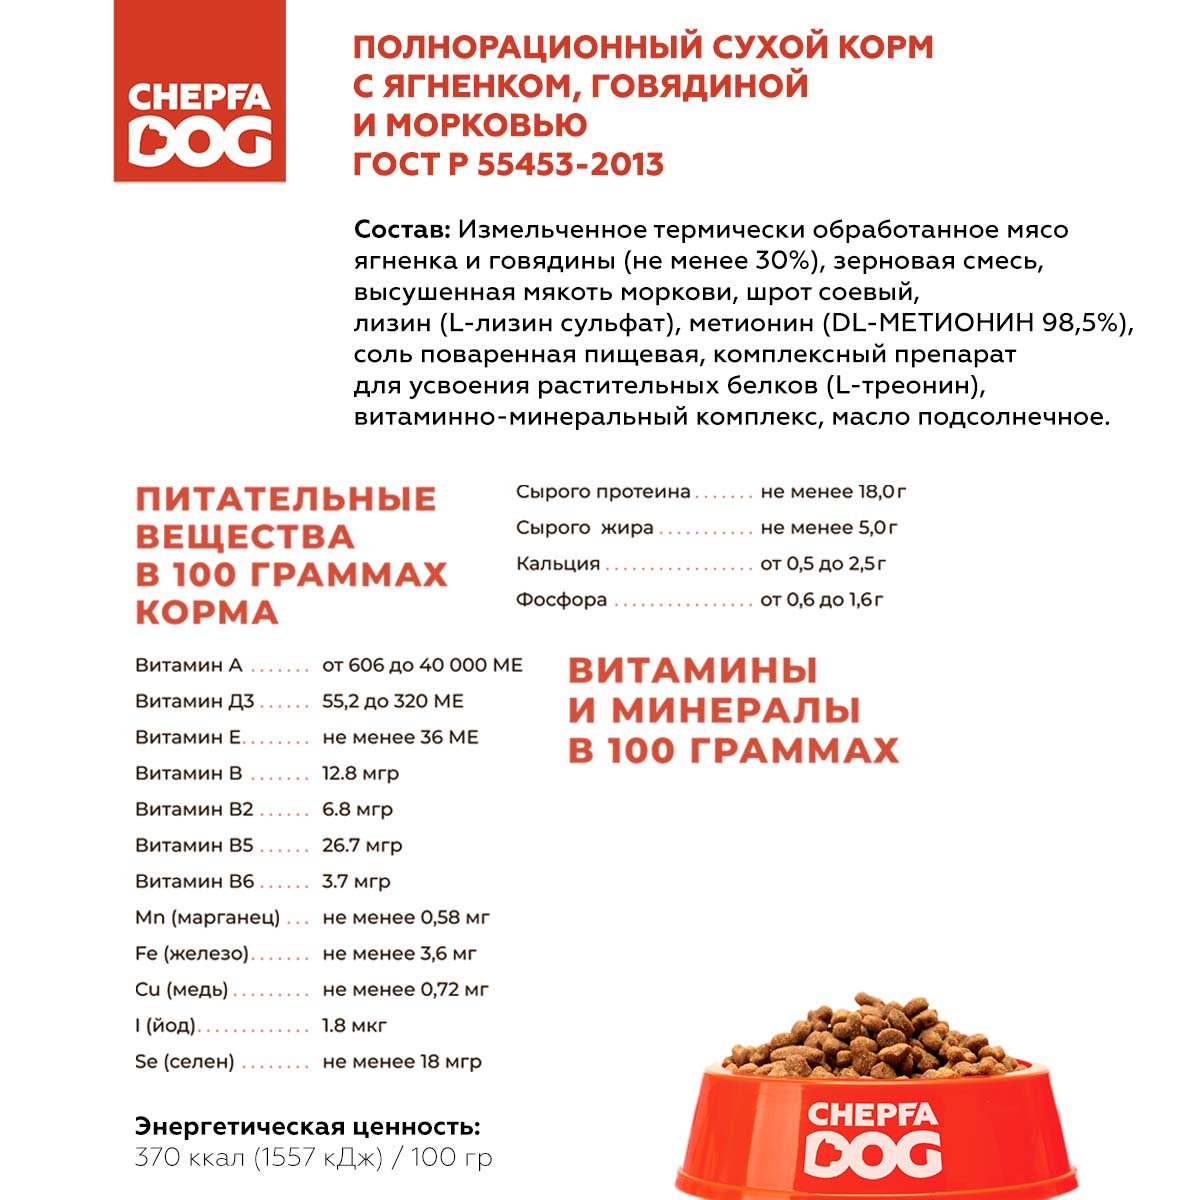 Сухой корм для собак Chepfa Dog Полнорационный ягненок и говядина 2.2 кг для взрослых собак малых и мелких пород - фото 4